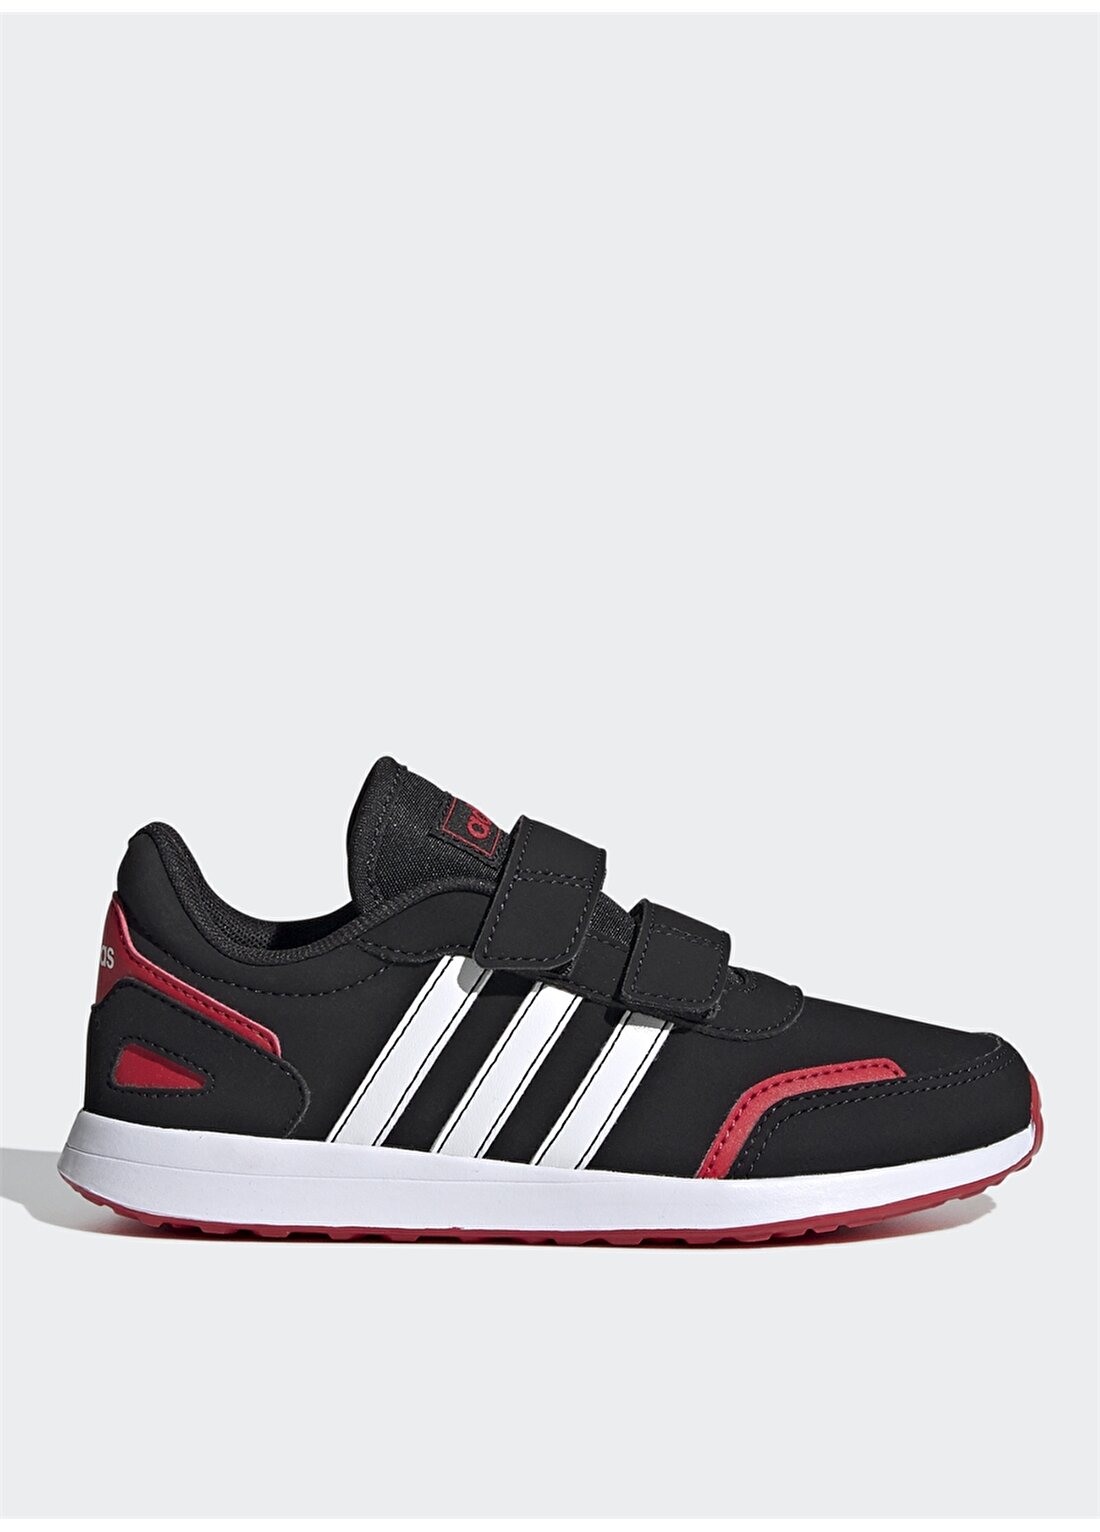 Adidas Siyah - Beyaz - Kırmızı Erkek Çocuk Yürüyüş Ayakkabısı FW3984 VS SWITCH 3 C